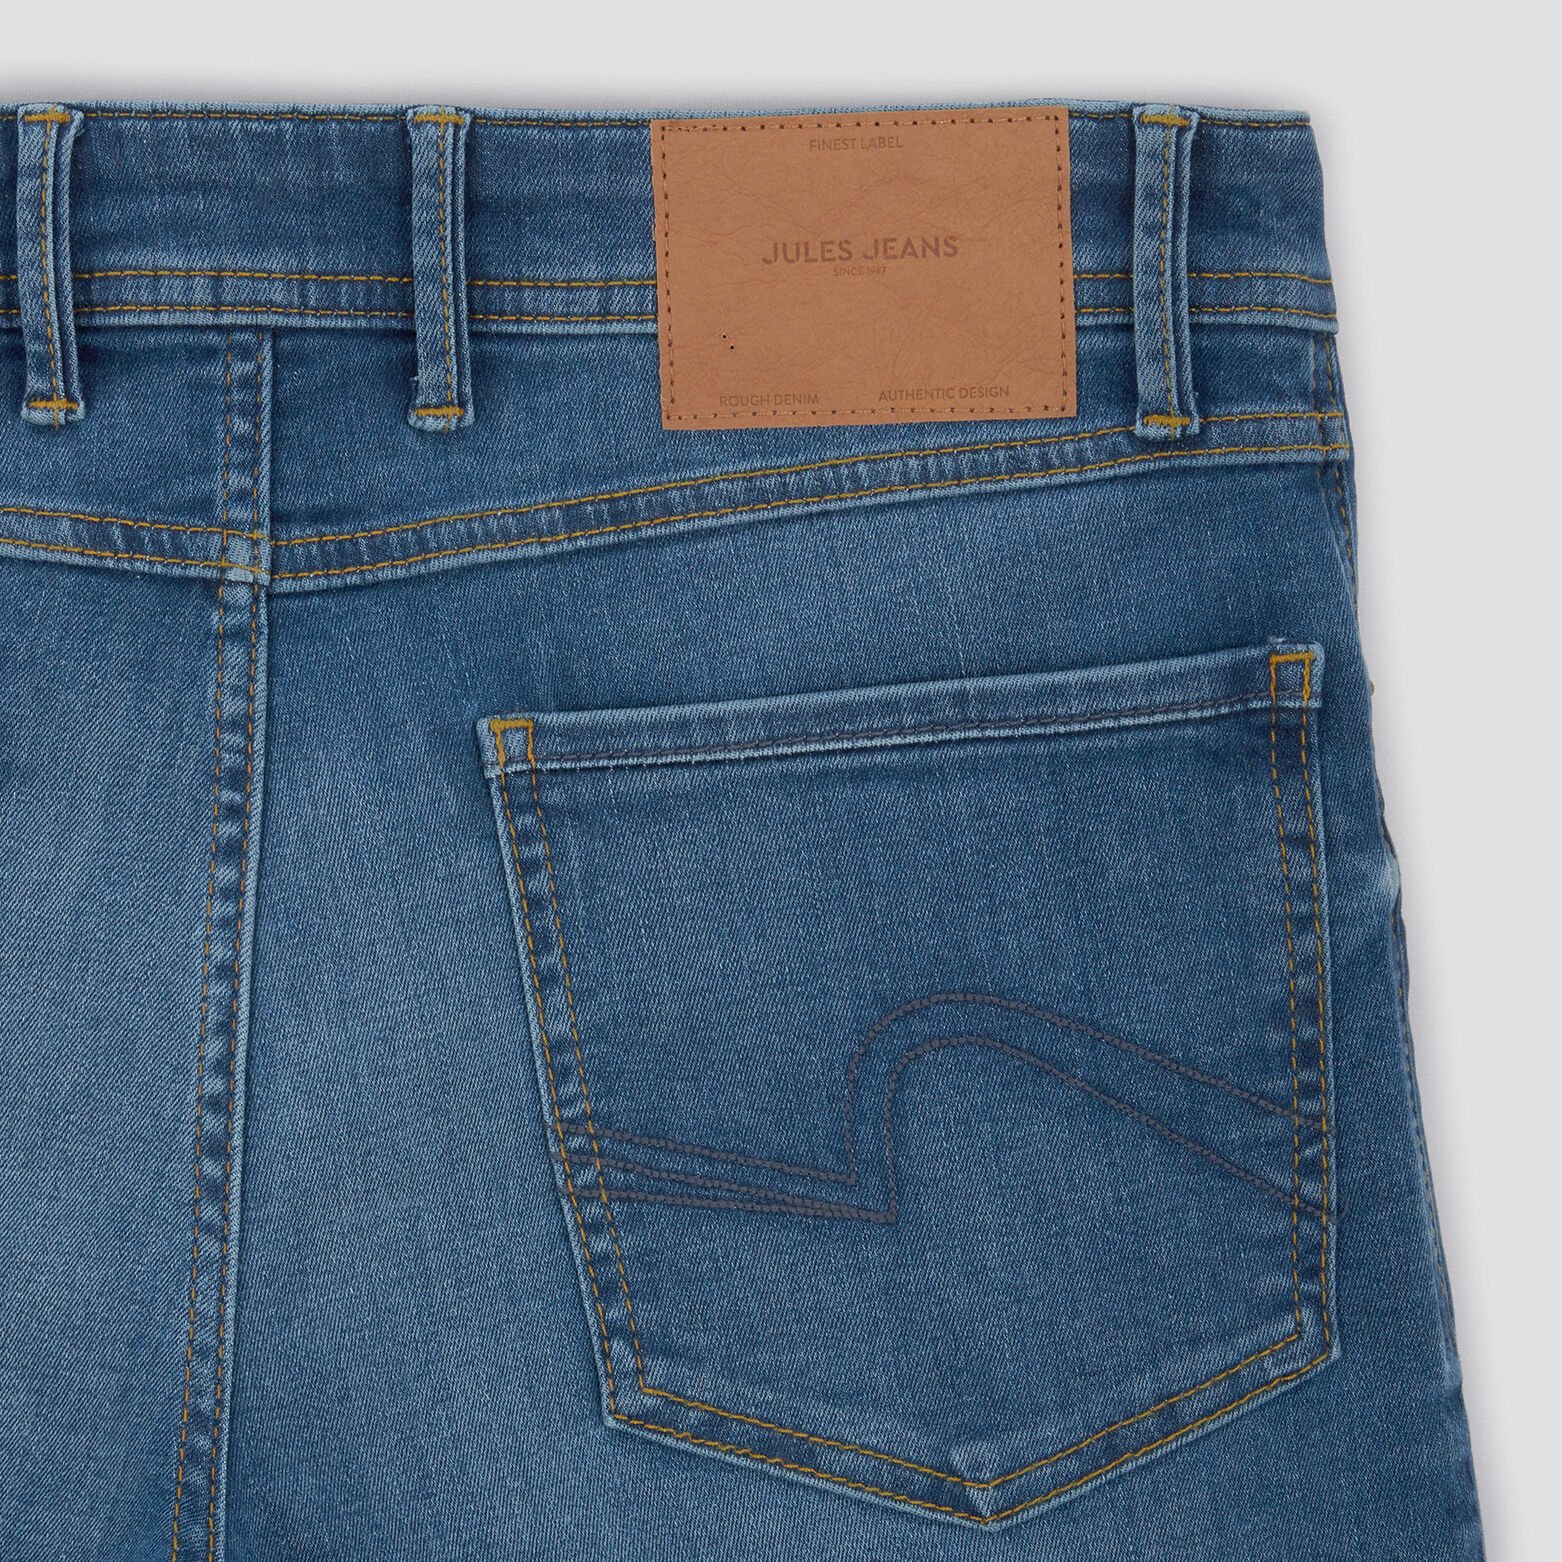 Bermuda in urbanflex jeans en gerecycled polyester